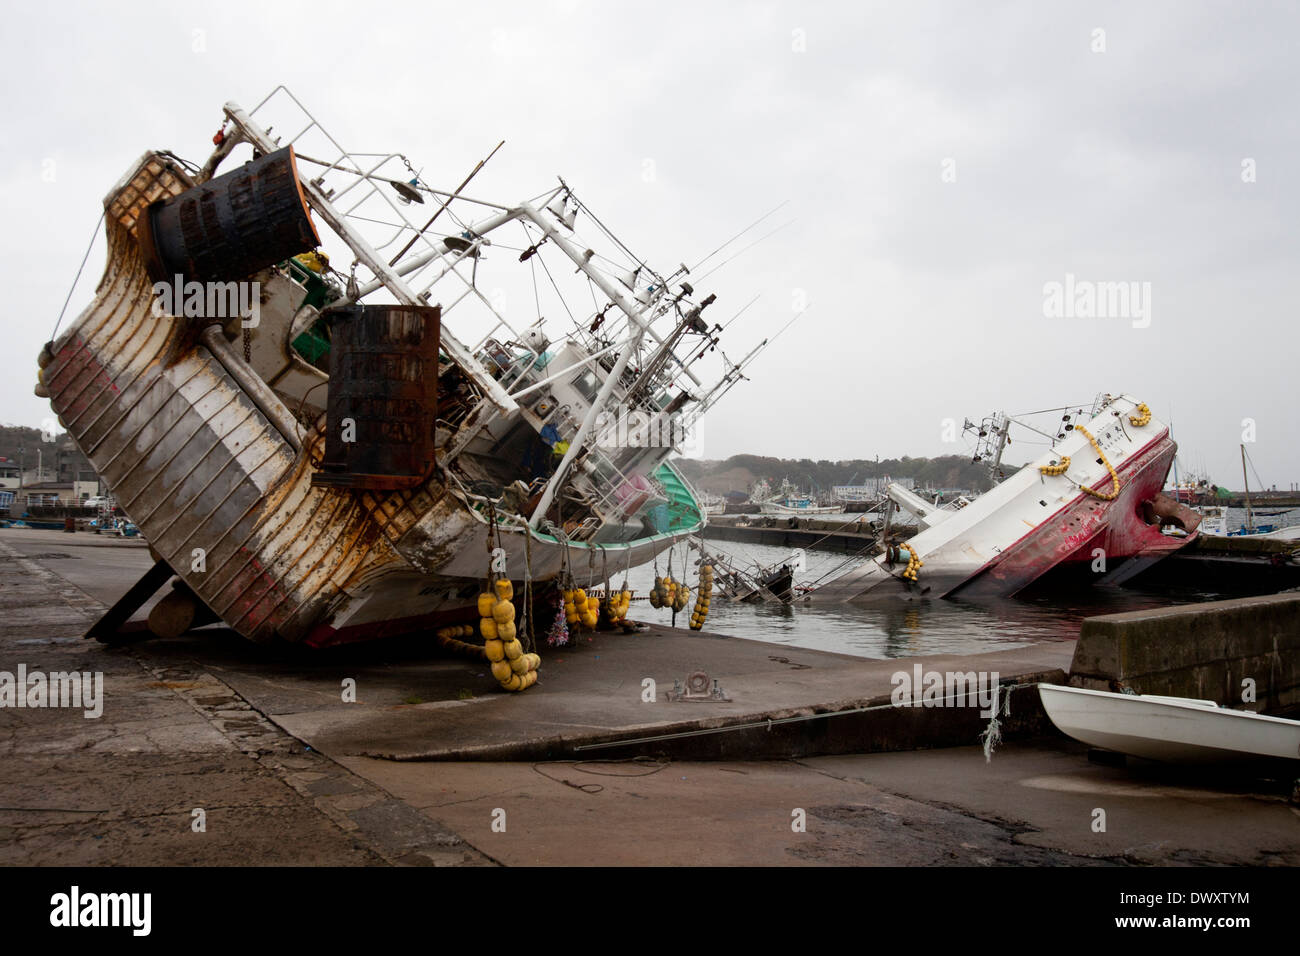 Fishing boats washed ashore by tsunami, Fukushima, Japan Stock Photo